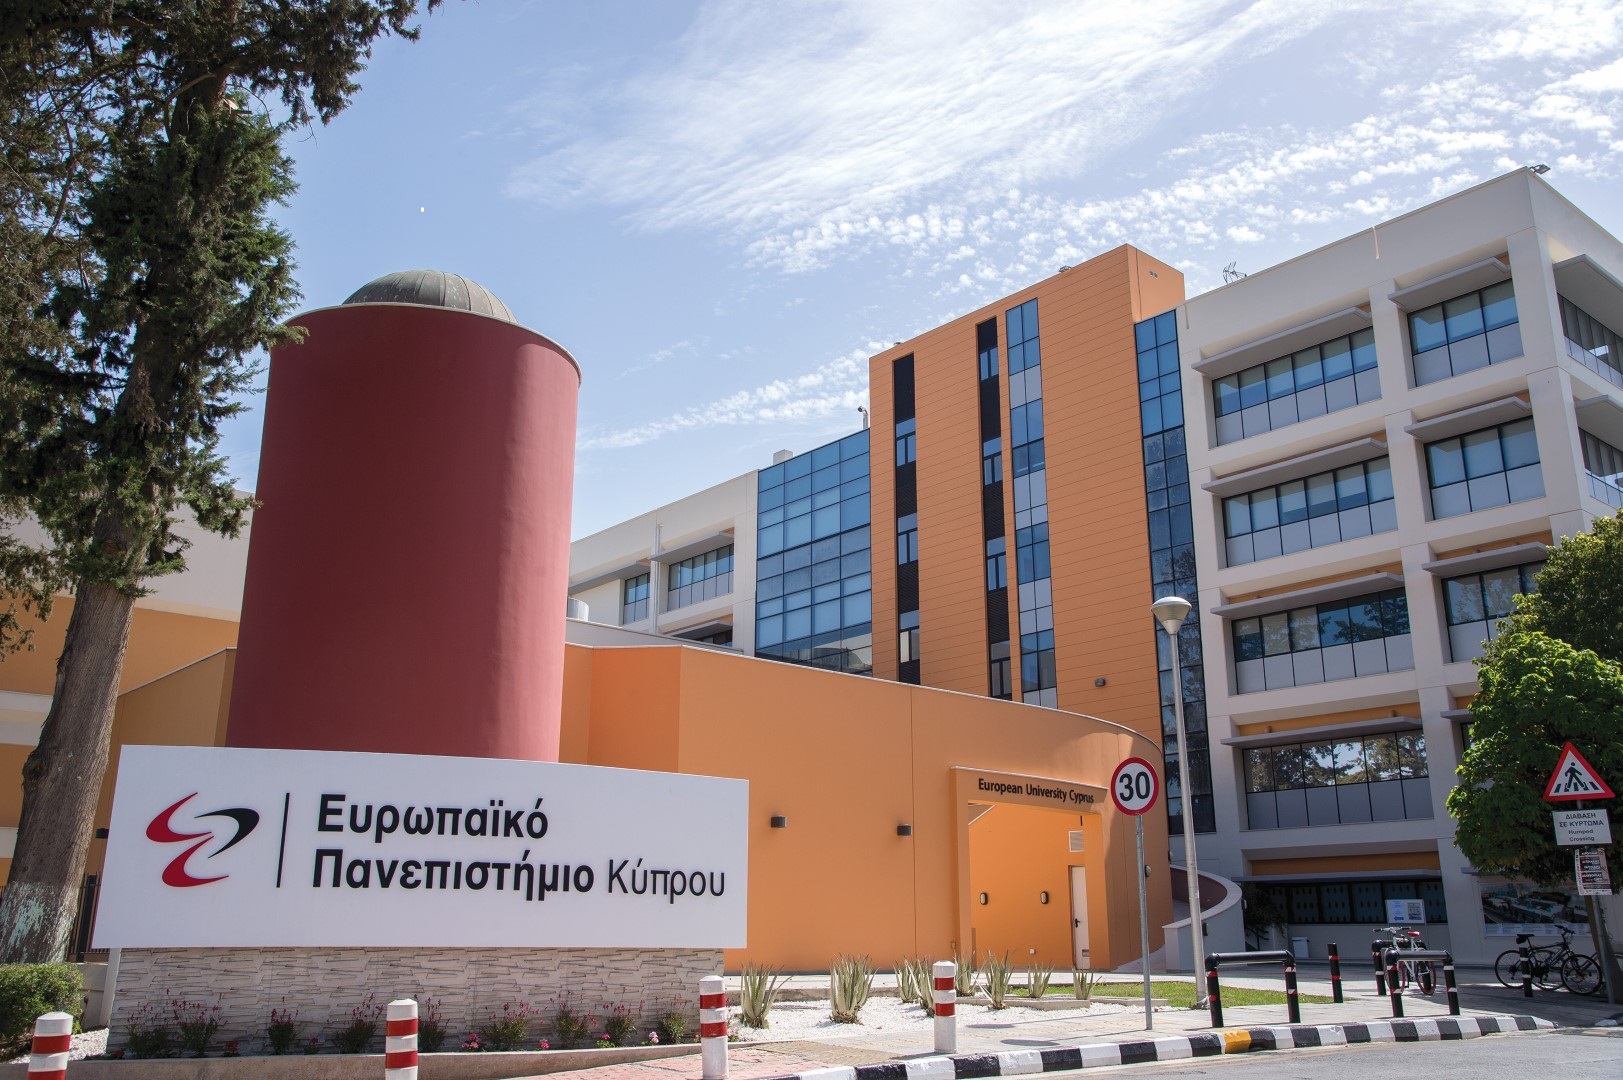 Διαδικτυακή ενημέρωση για τα Μεταπτυχιακά Προγράμματα Σπουδών του Ευρ. Πανεπιστημίου Κύπρου